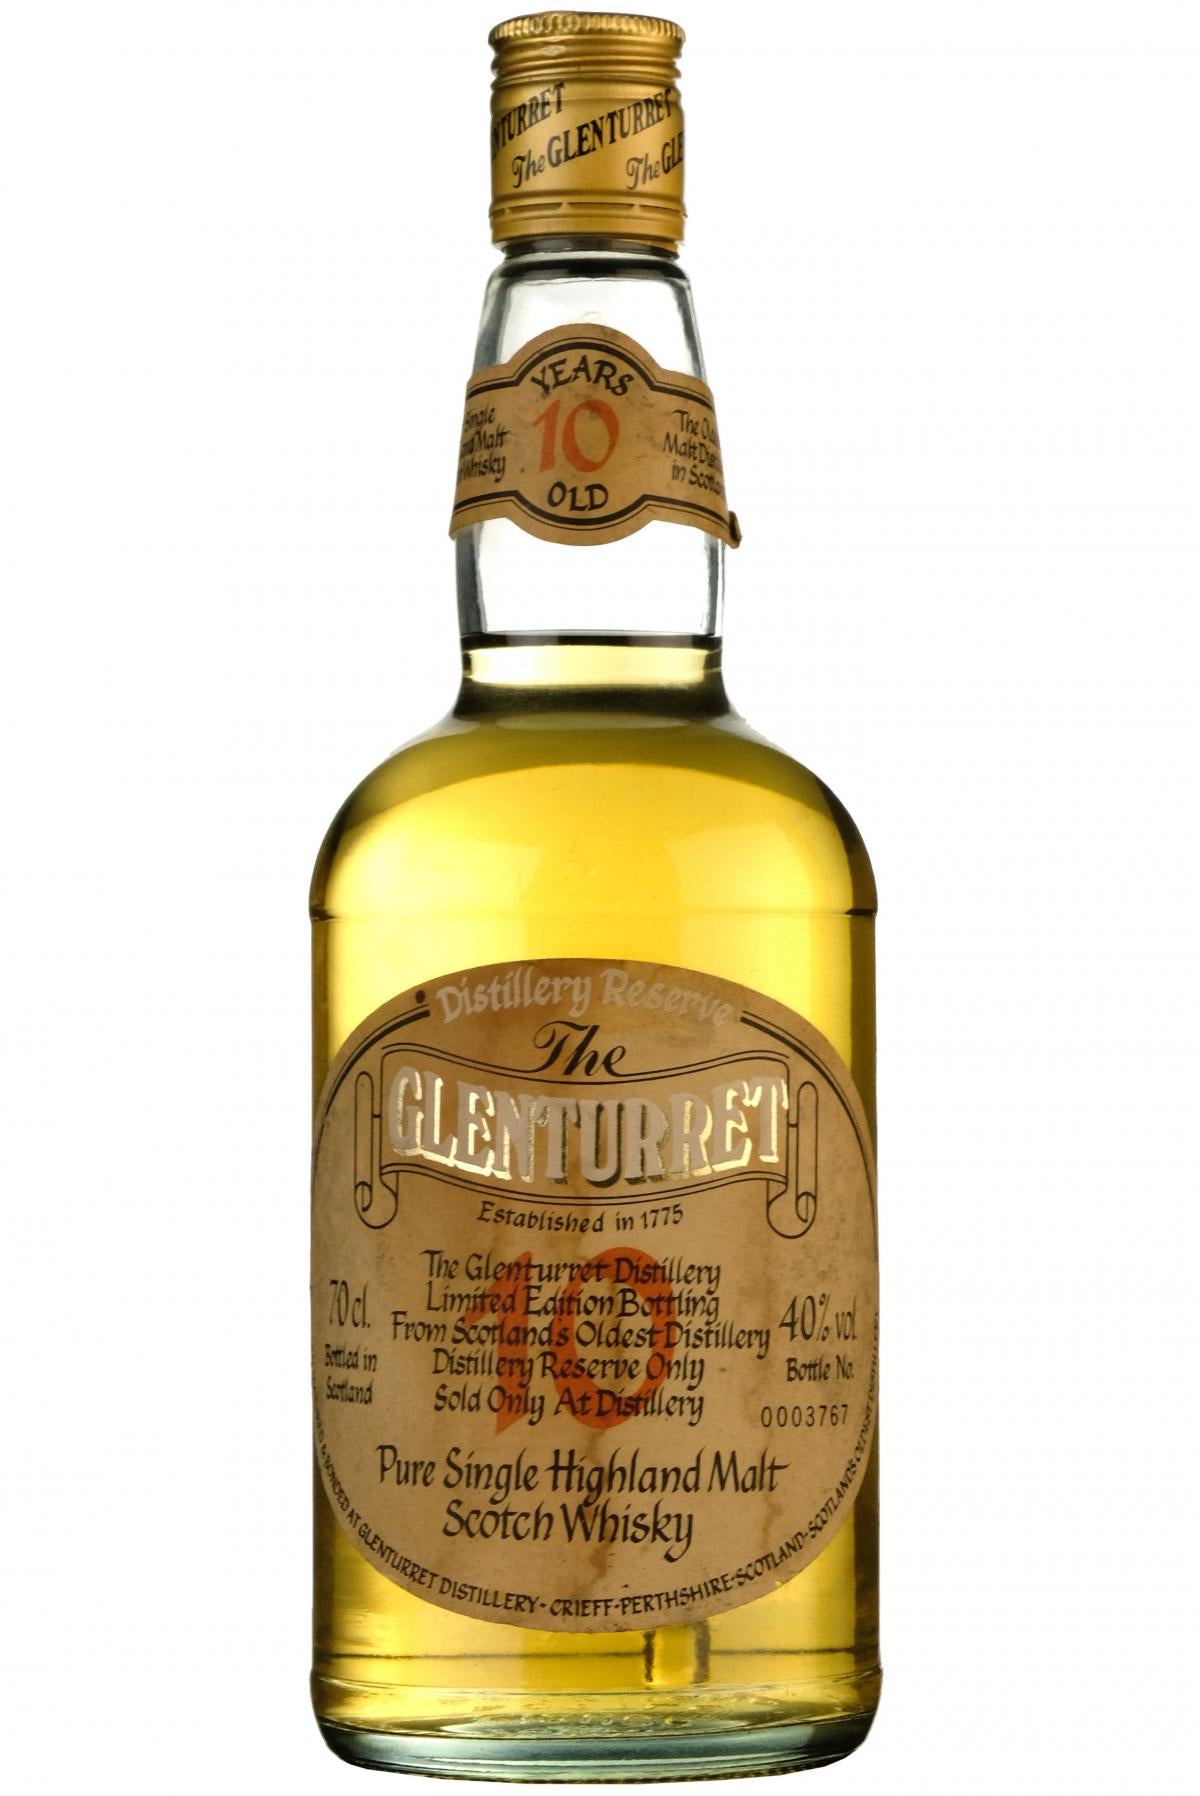 glenturret 10 year old, distillery reserve, sold only at the distillery, bottled 1990s,